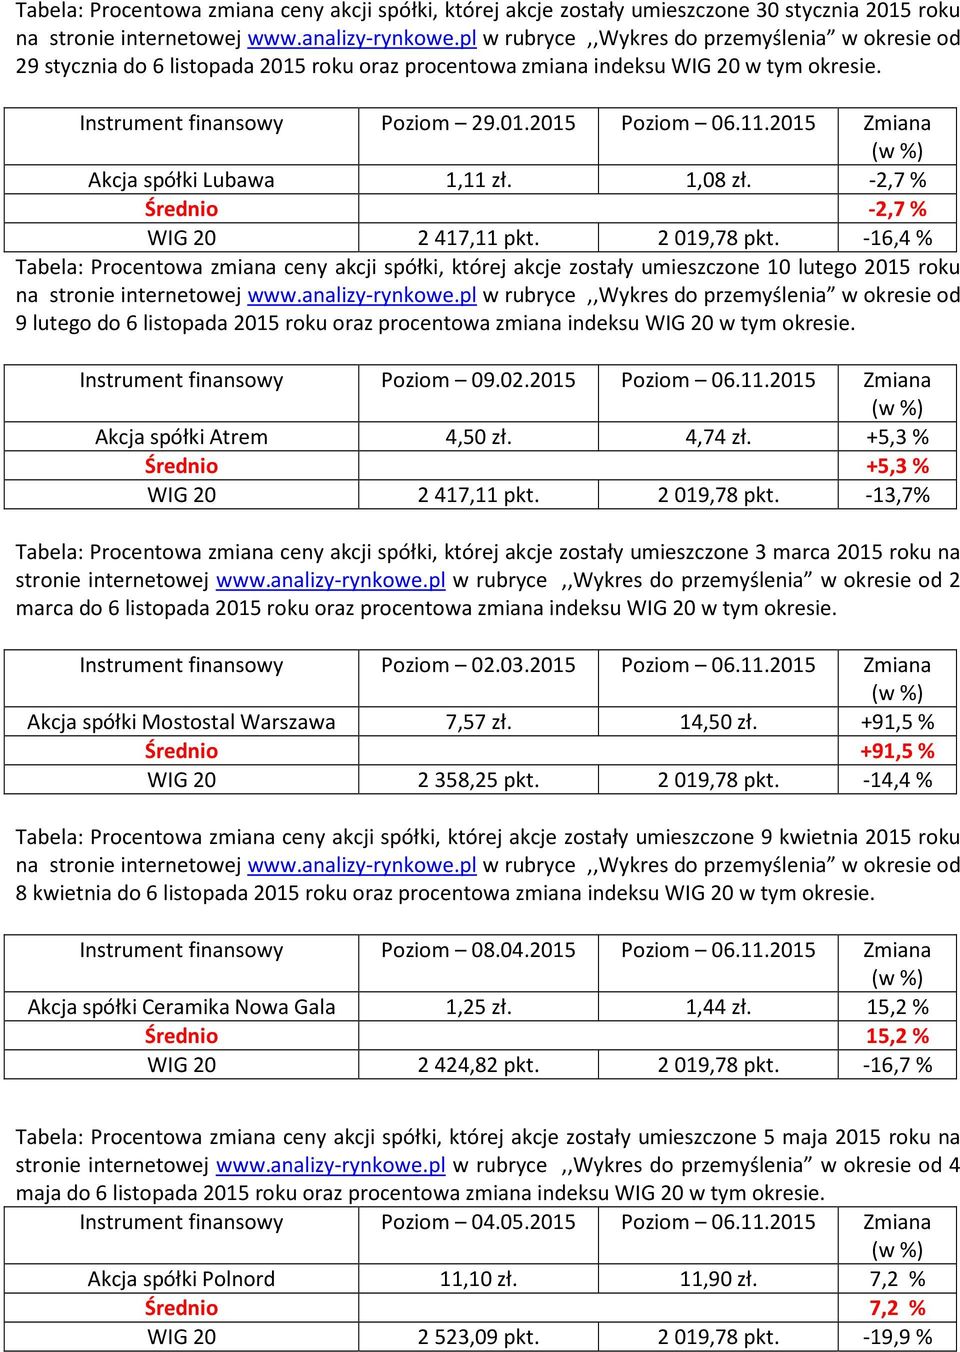 2015 Zmiana Akcja spółki Lubawa 1,11 zł. 1,08 zł. -2,7% Średnio -2,7% WIG 20 2417,11 pkt. 2019,78 pkt.